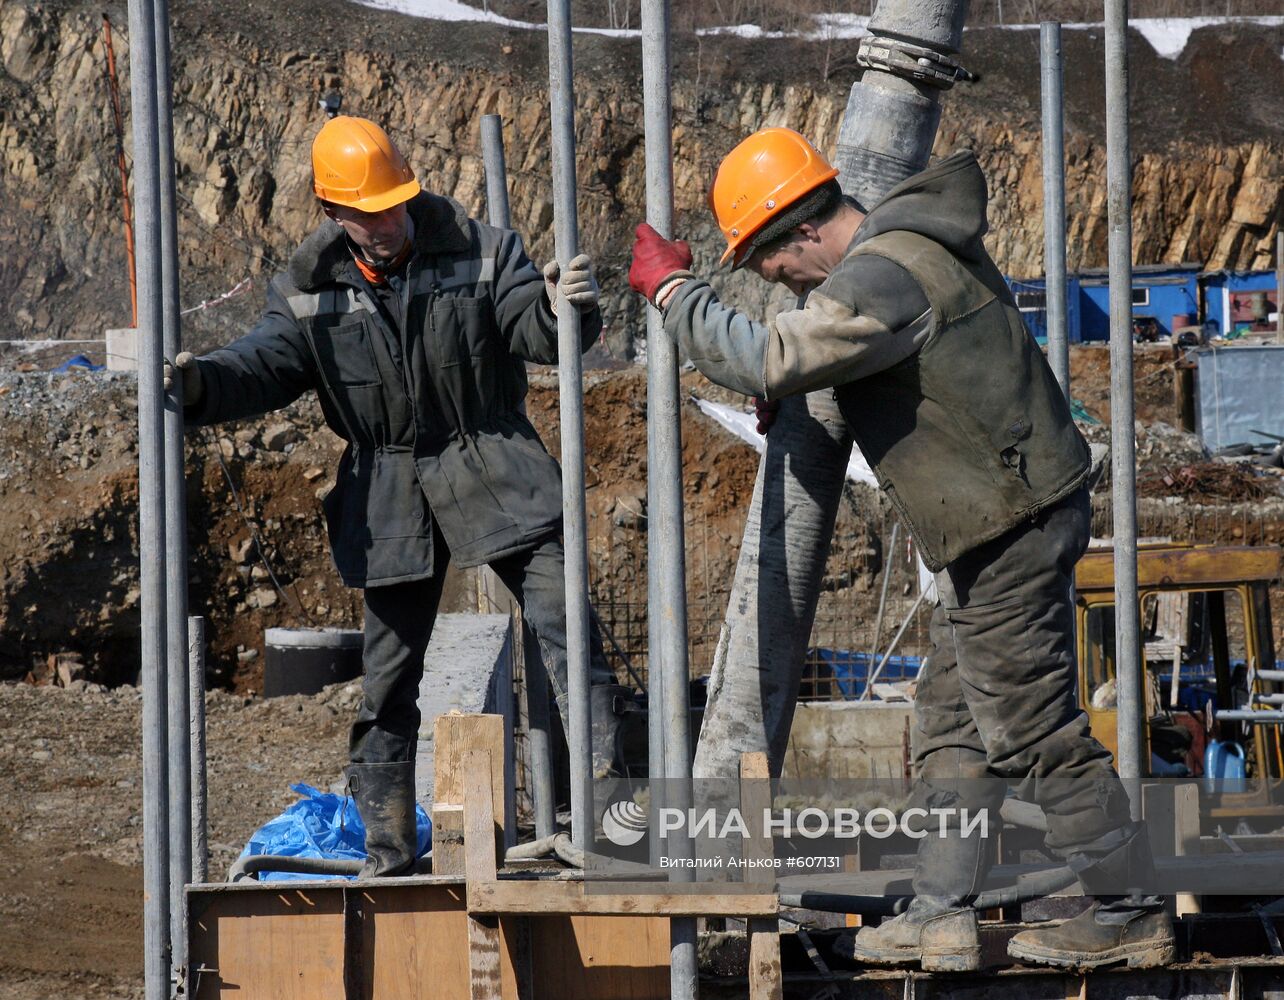 Строительство очистных сооружений во Владивостоке